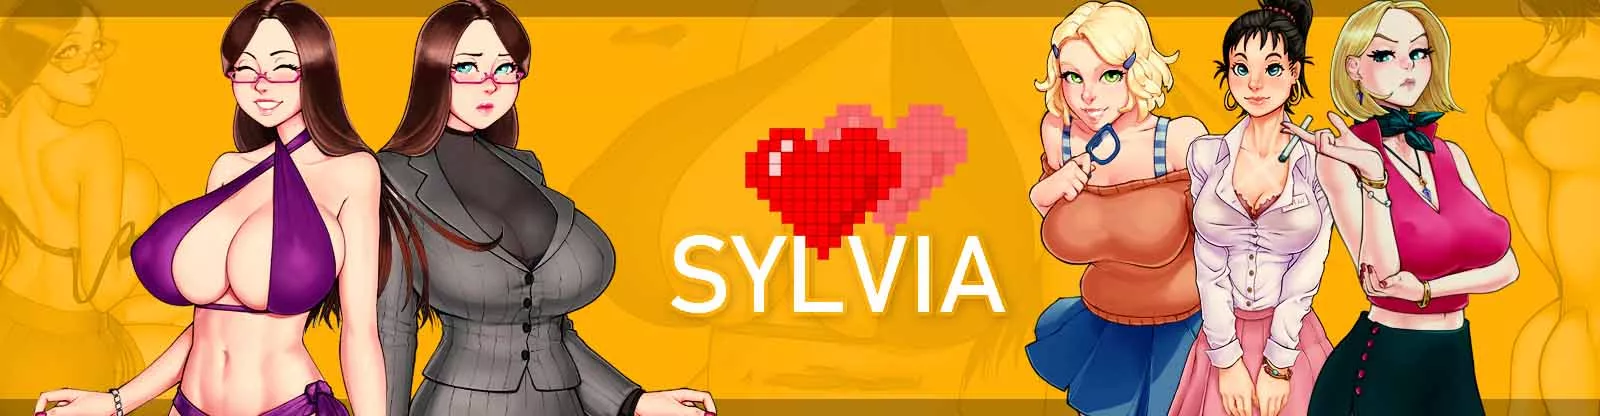 Sylvia 3 ზრდასრული თამაში